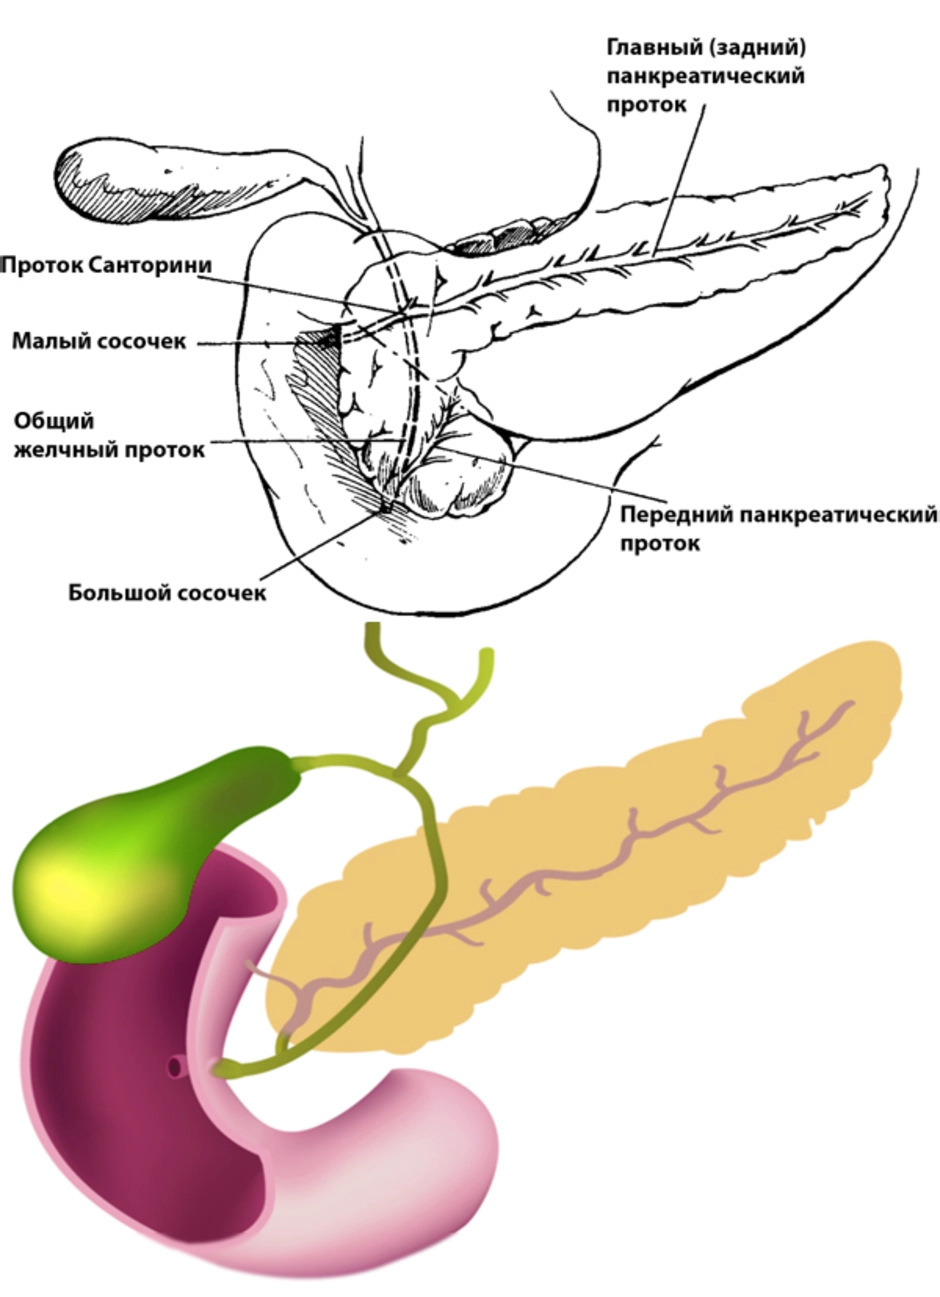 Поджелудок где находится. Анатомия поджелудочная железа расположение. Поджелудочная железа схема. Внутренние органы человека поджелудочная железа схема расположения. Строение поджелудочной железы анатомия.